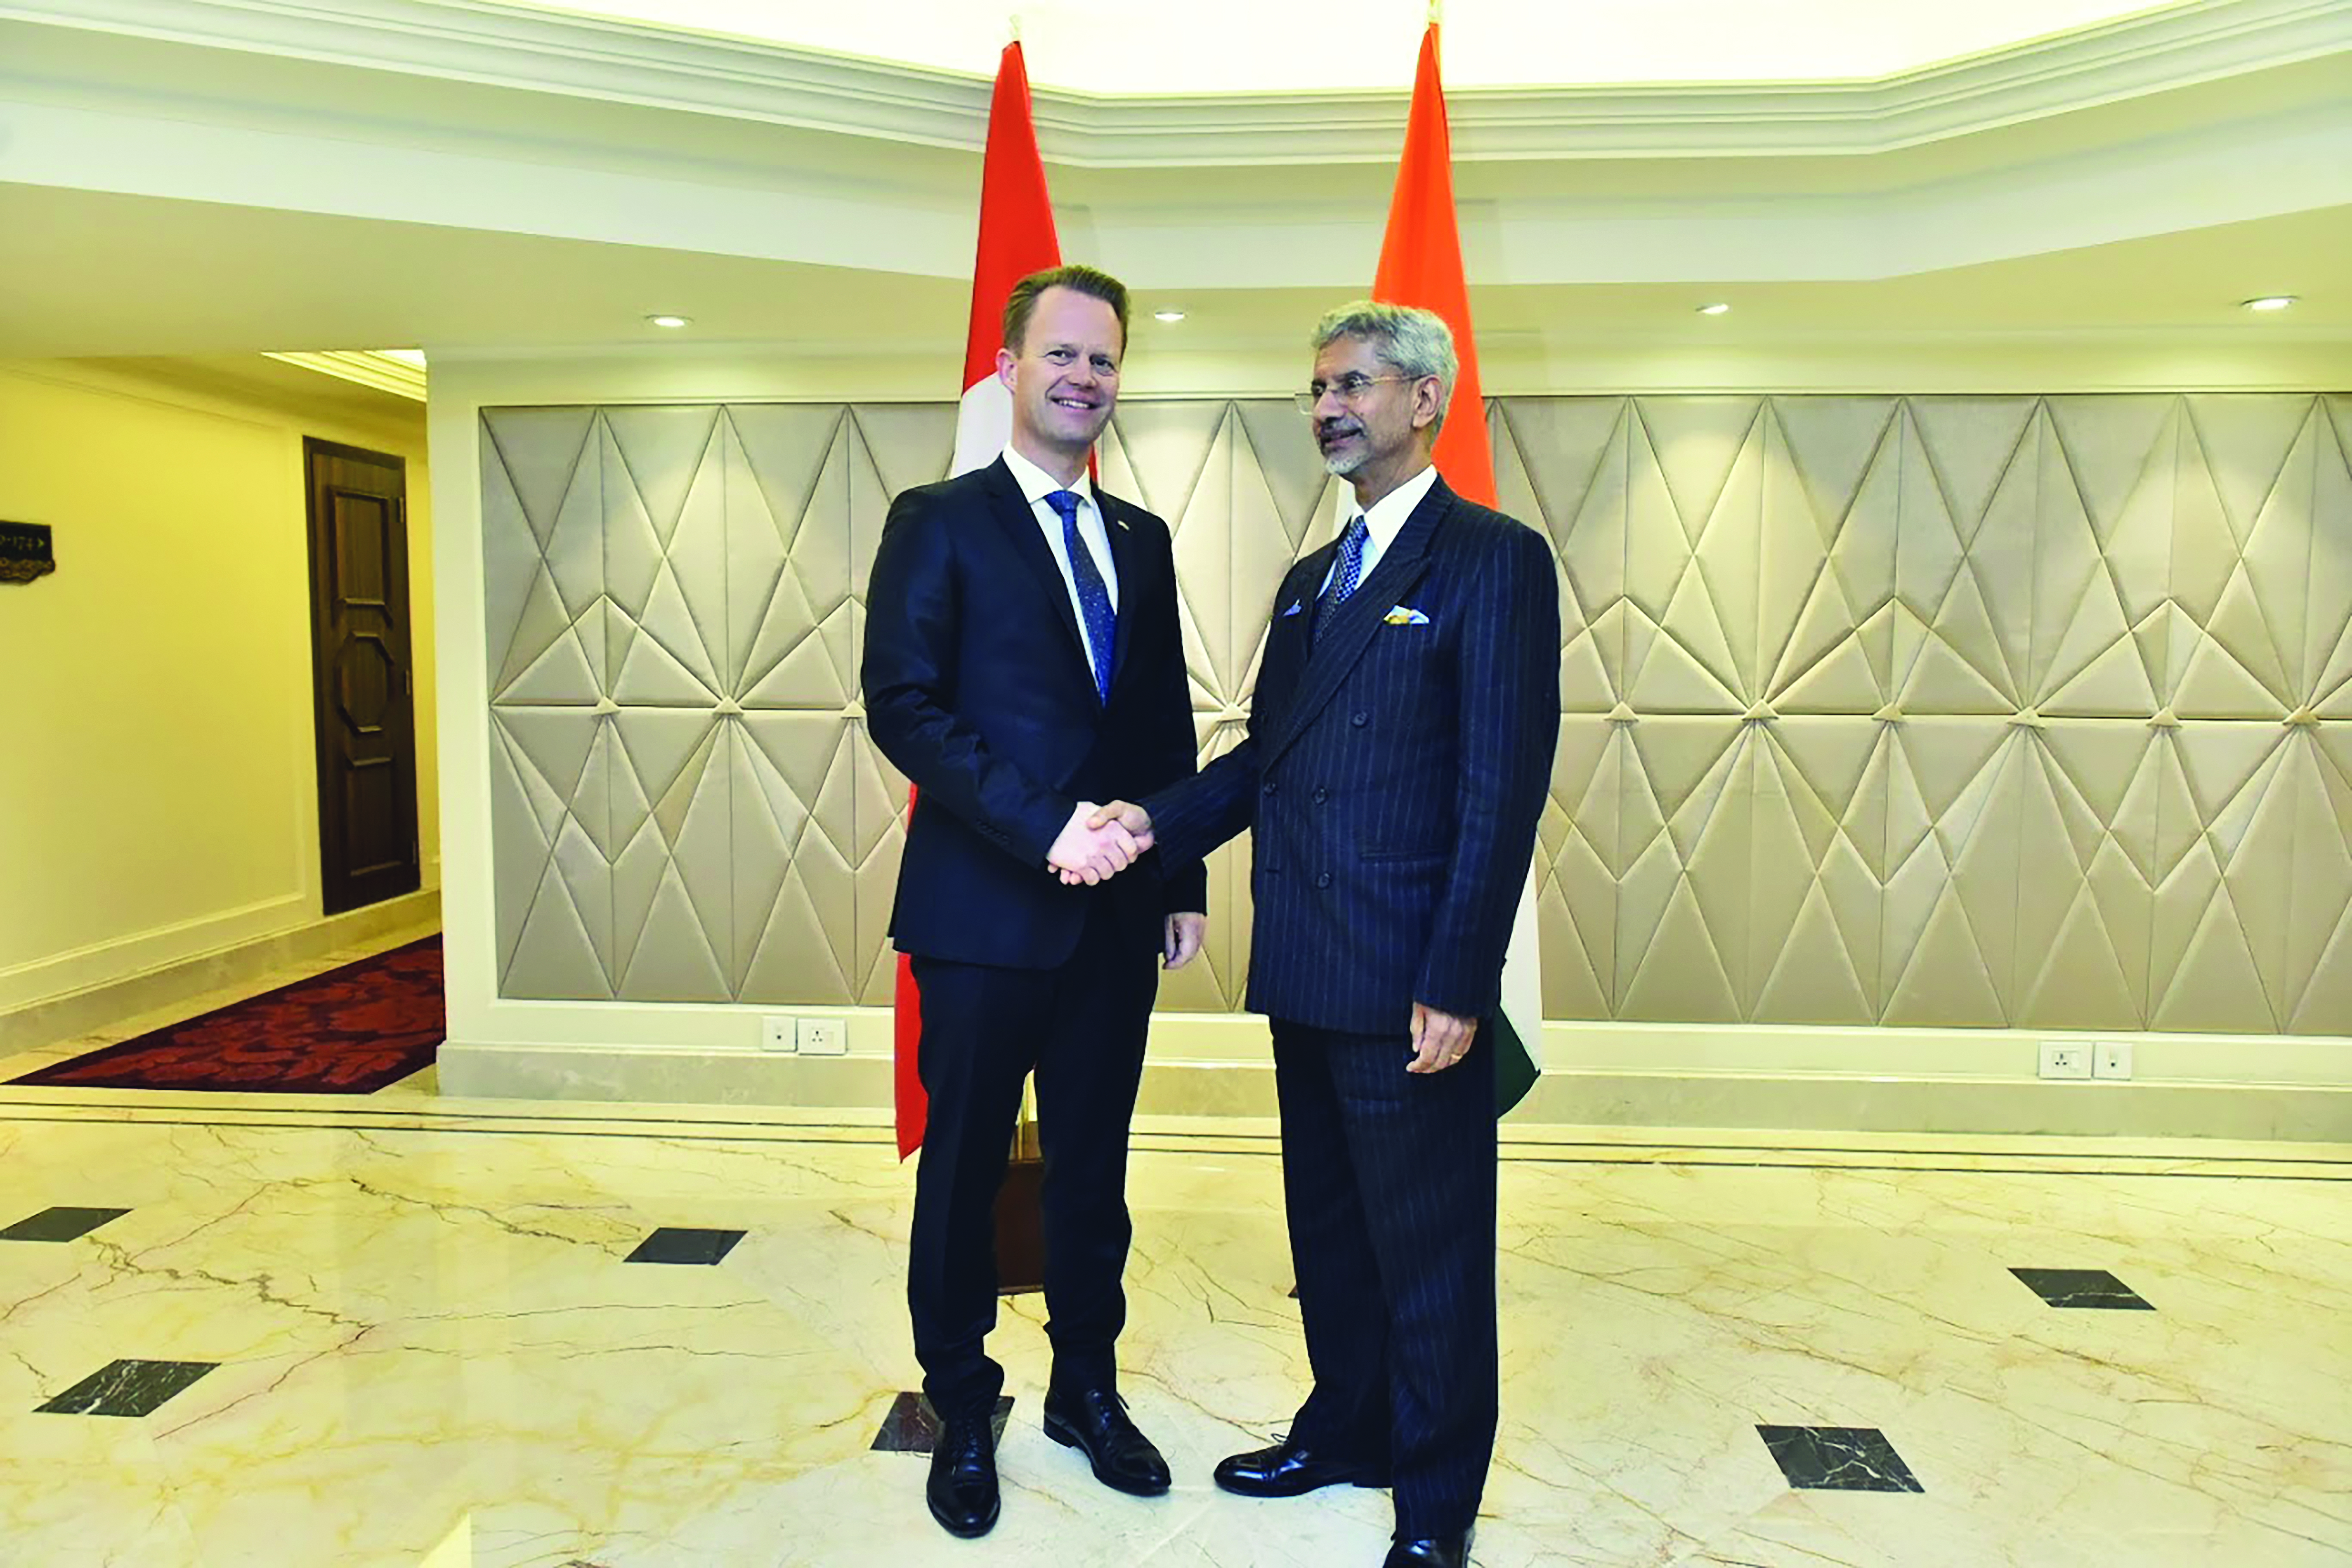 Dänemark festigt die erfolgreiche Zusammenarbeit mit Indien